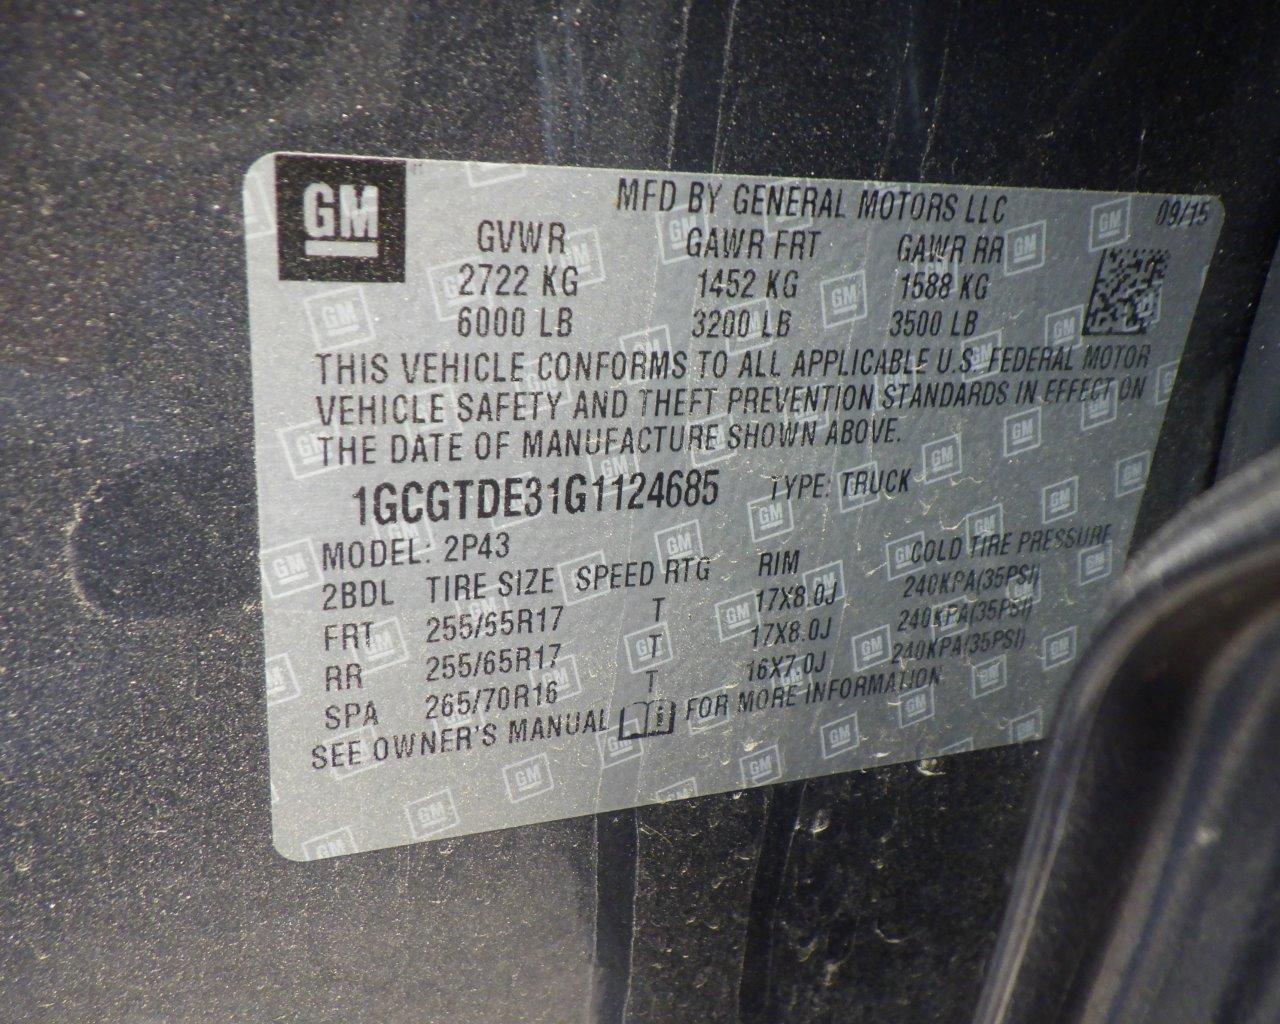 2016 Chevrolet Colorado Ext Cab   w/Tonneau Cover   4x4 s/n:124685